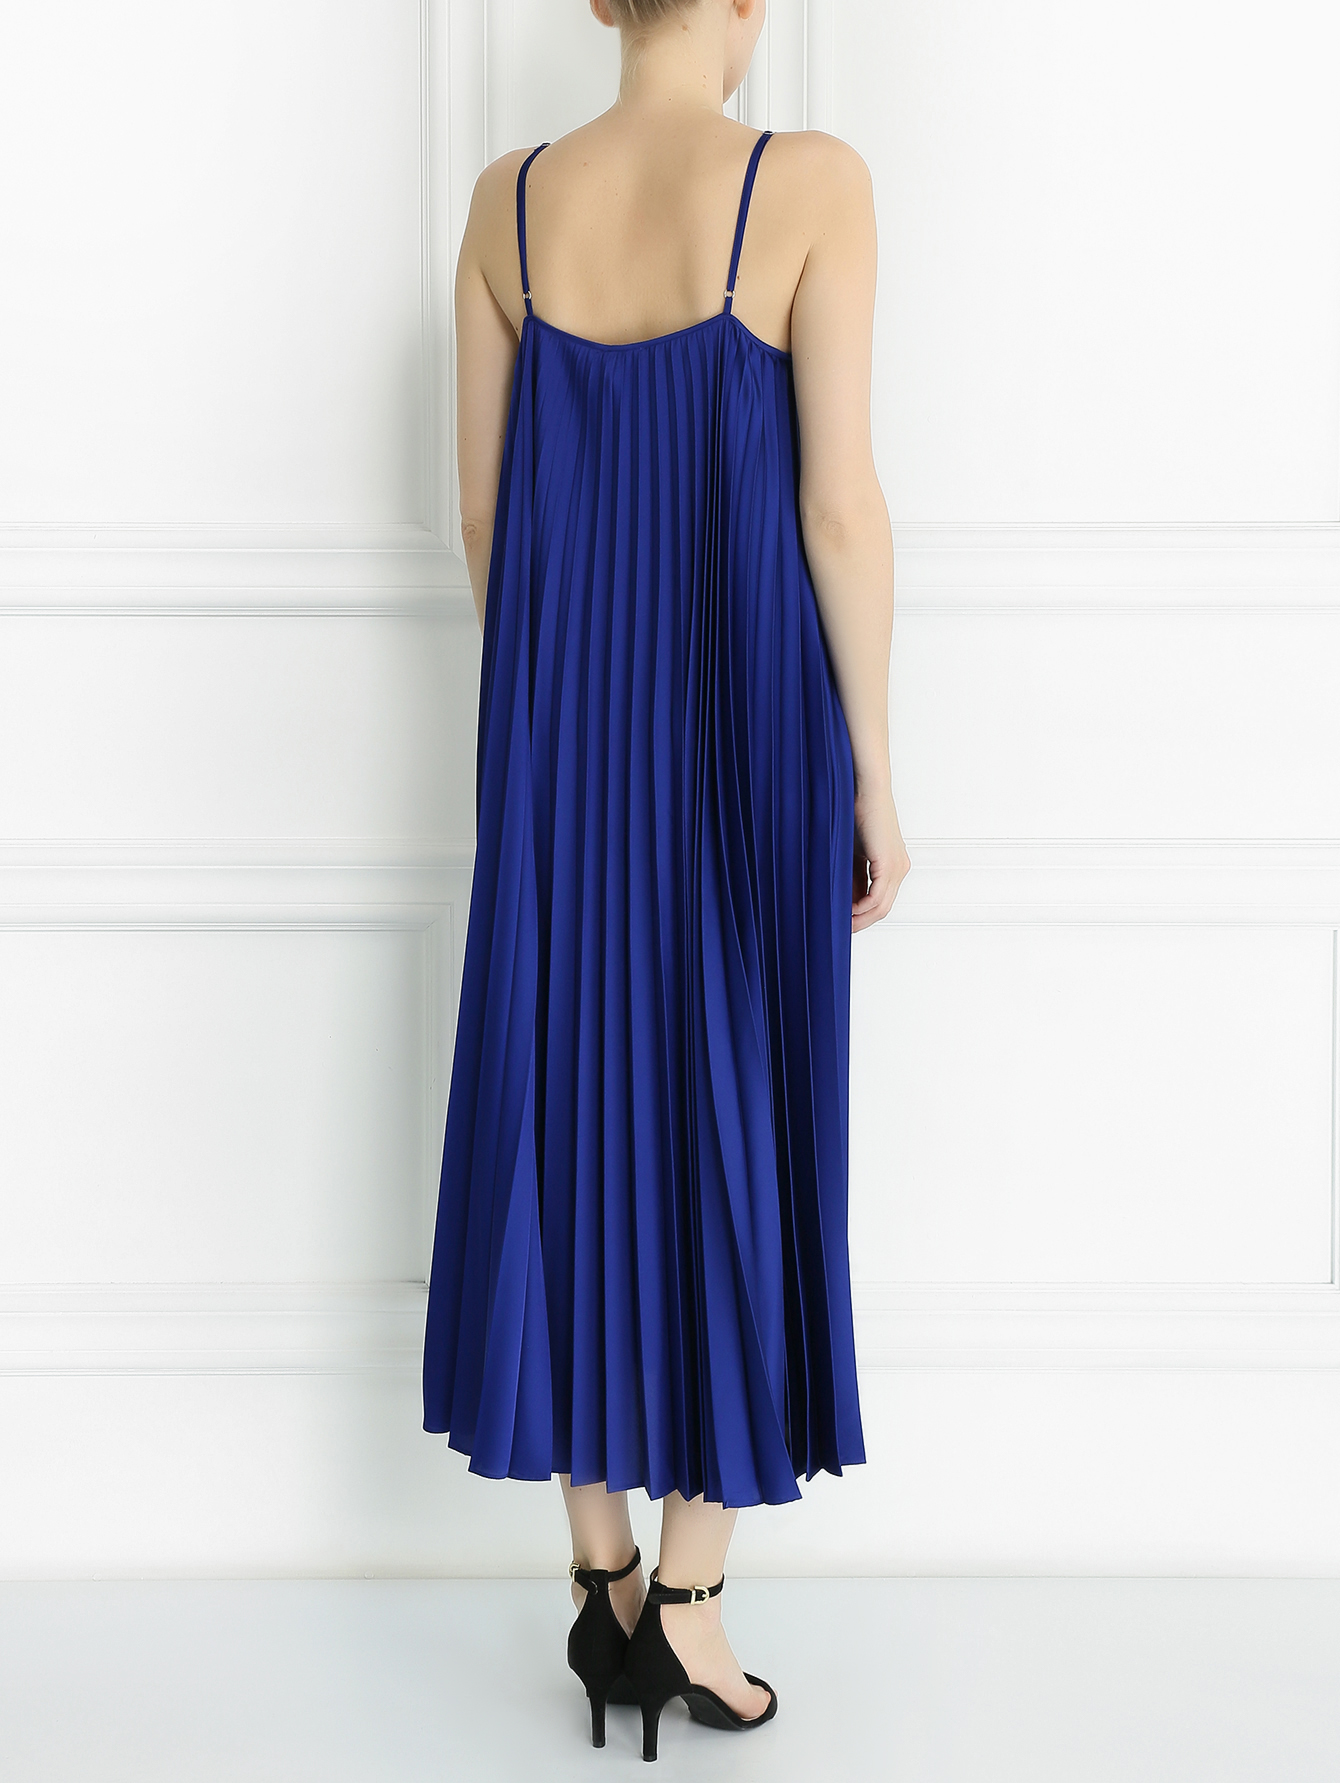 Платье Ринальди синее с плиссировкой